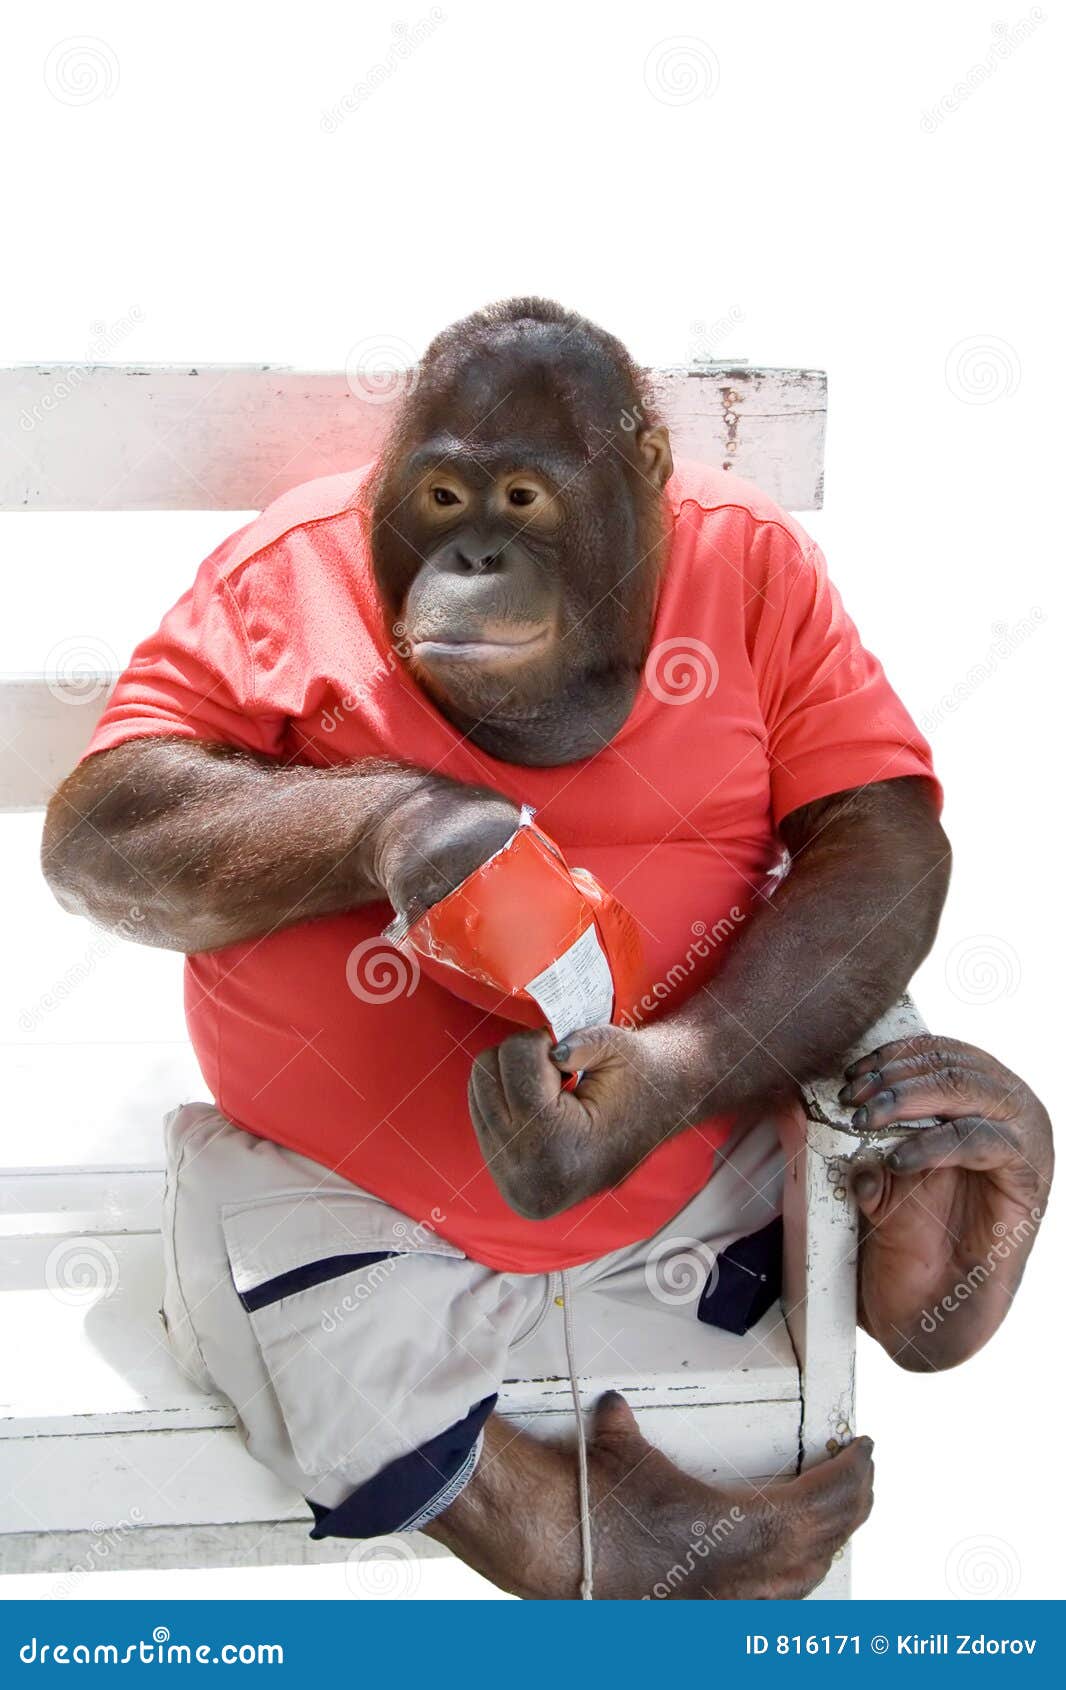 Monkey Eating Chips Stock Image - Image: 816171